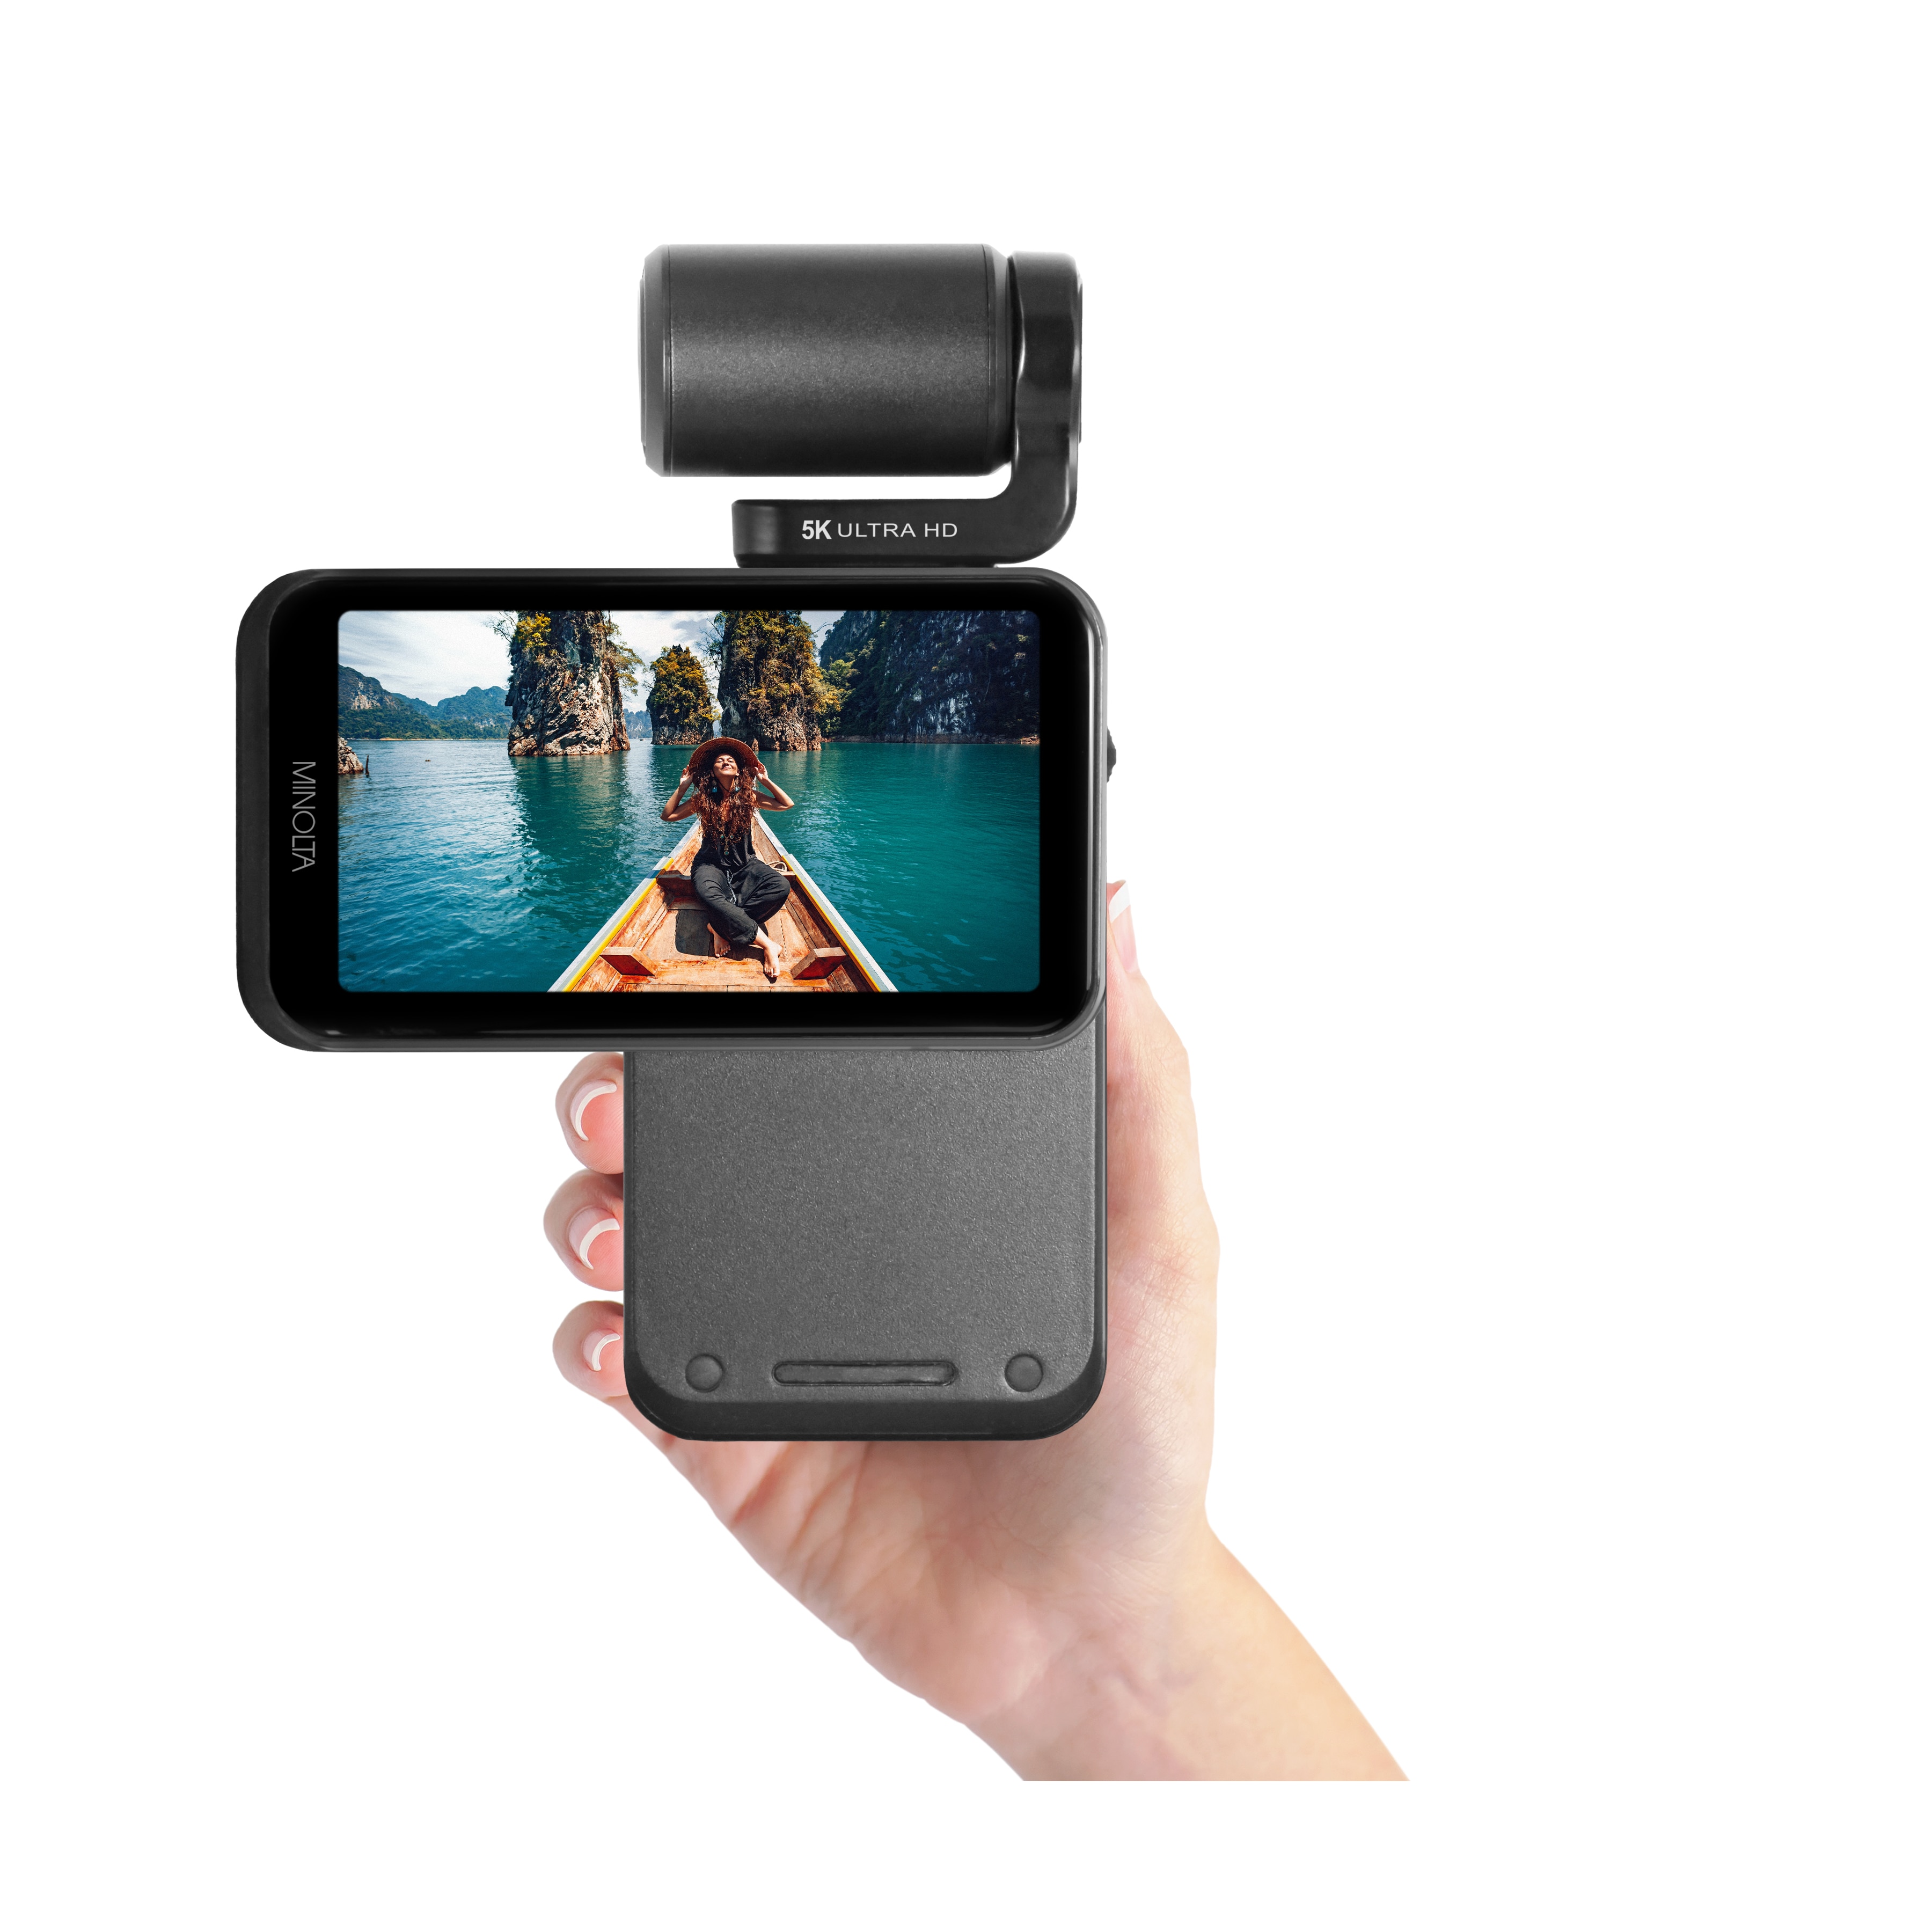 Minolta 5K Ultra HD 20MP Handheld Pocket Camcorder Motorized Tilting Lens Head